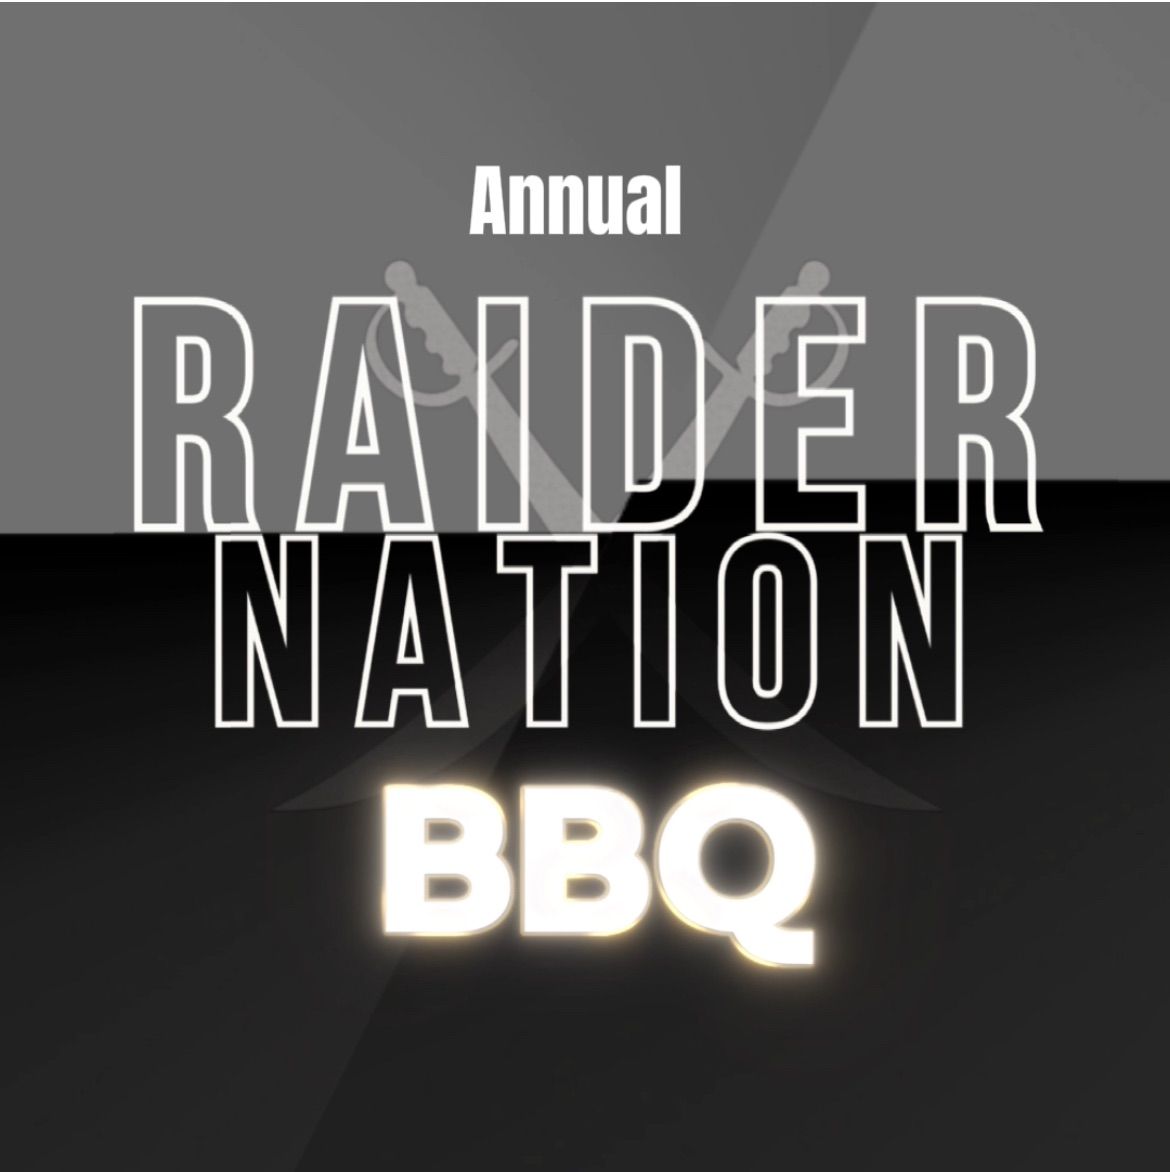 Annual RAIDER NATION BBQ